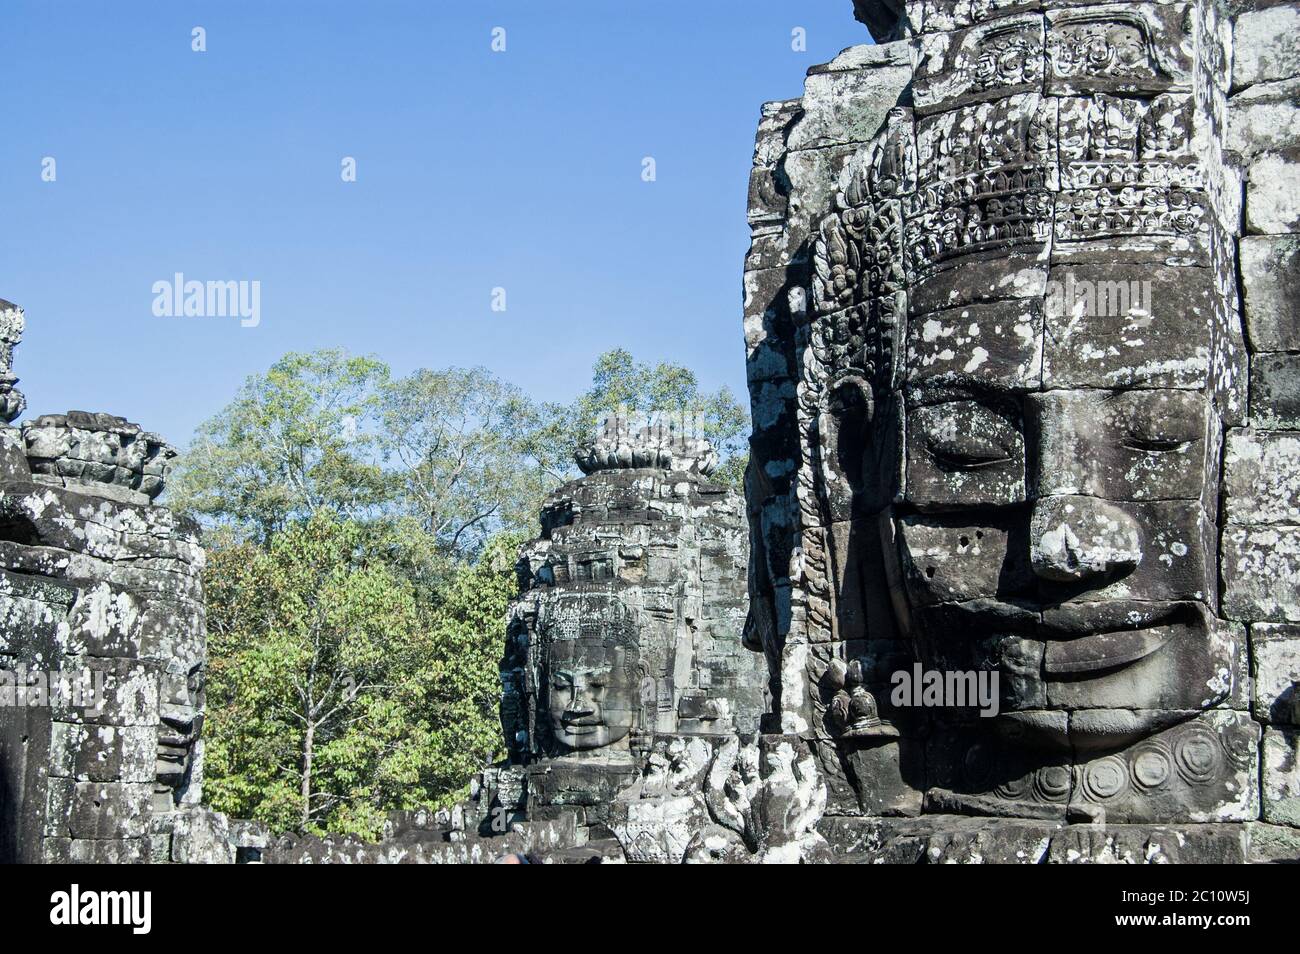 Vista in cima al tempio di Bayon, Cambogia, dei volti scolpiti sulle torri di questo antico monumento Khmer. Angkor Thom, Siem Reap, Cambogia. Foto Stock